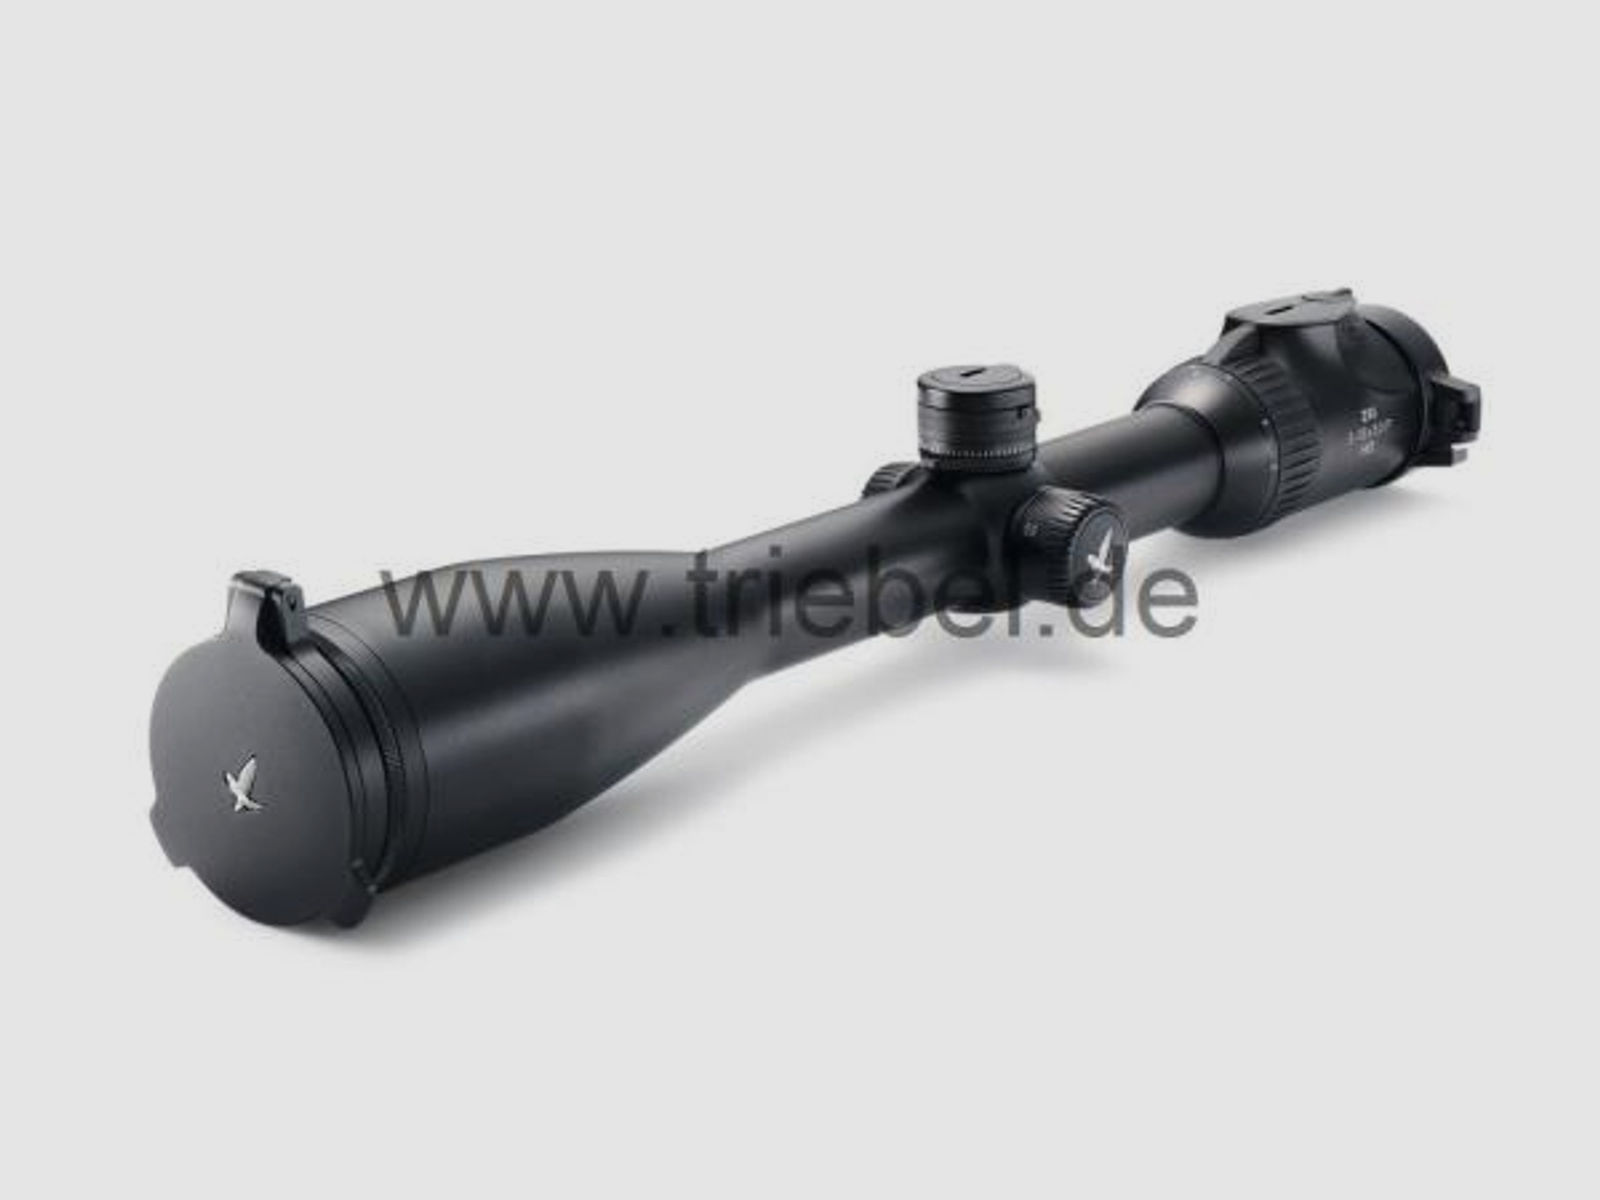 SWAROVSKI Zubehör für Zielfernrohre Objektivdeckel 24mm SLP-O-24 f. Z8i, Z6(i), Z5, Z3, X5(i)